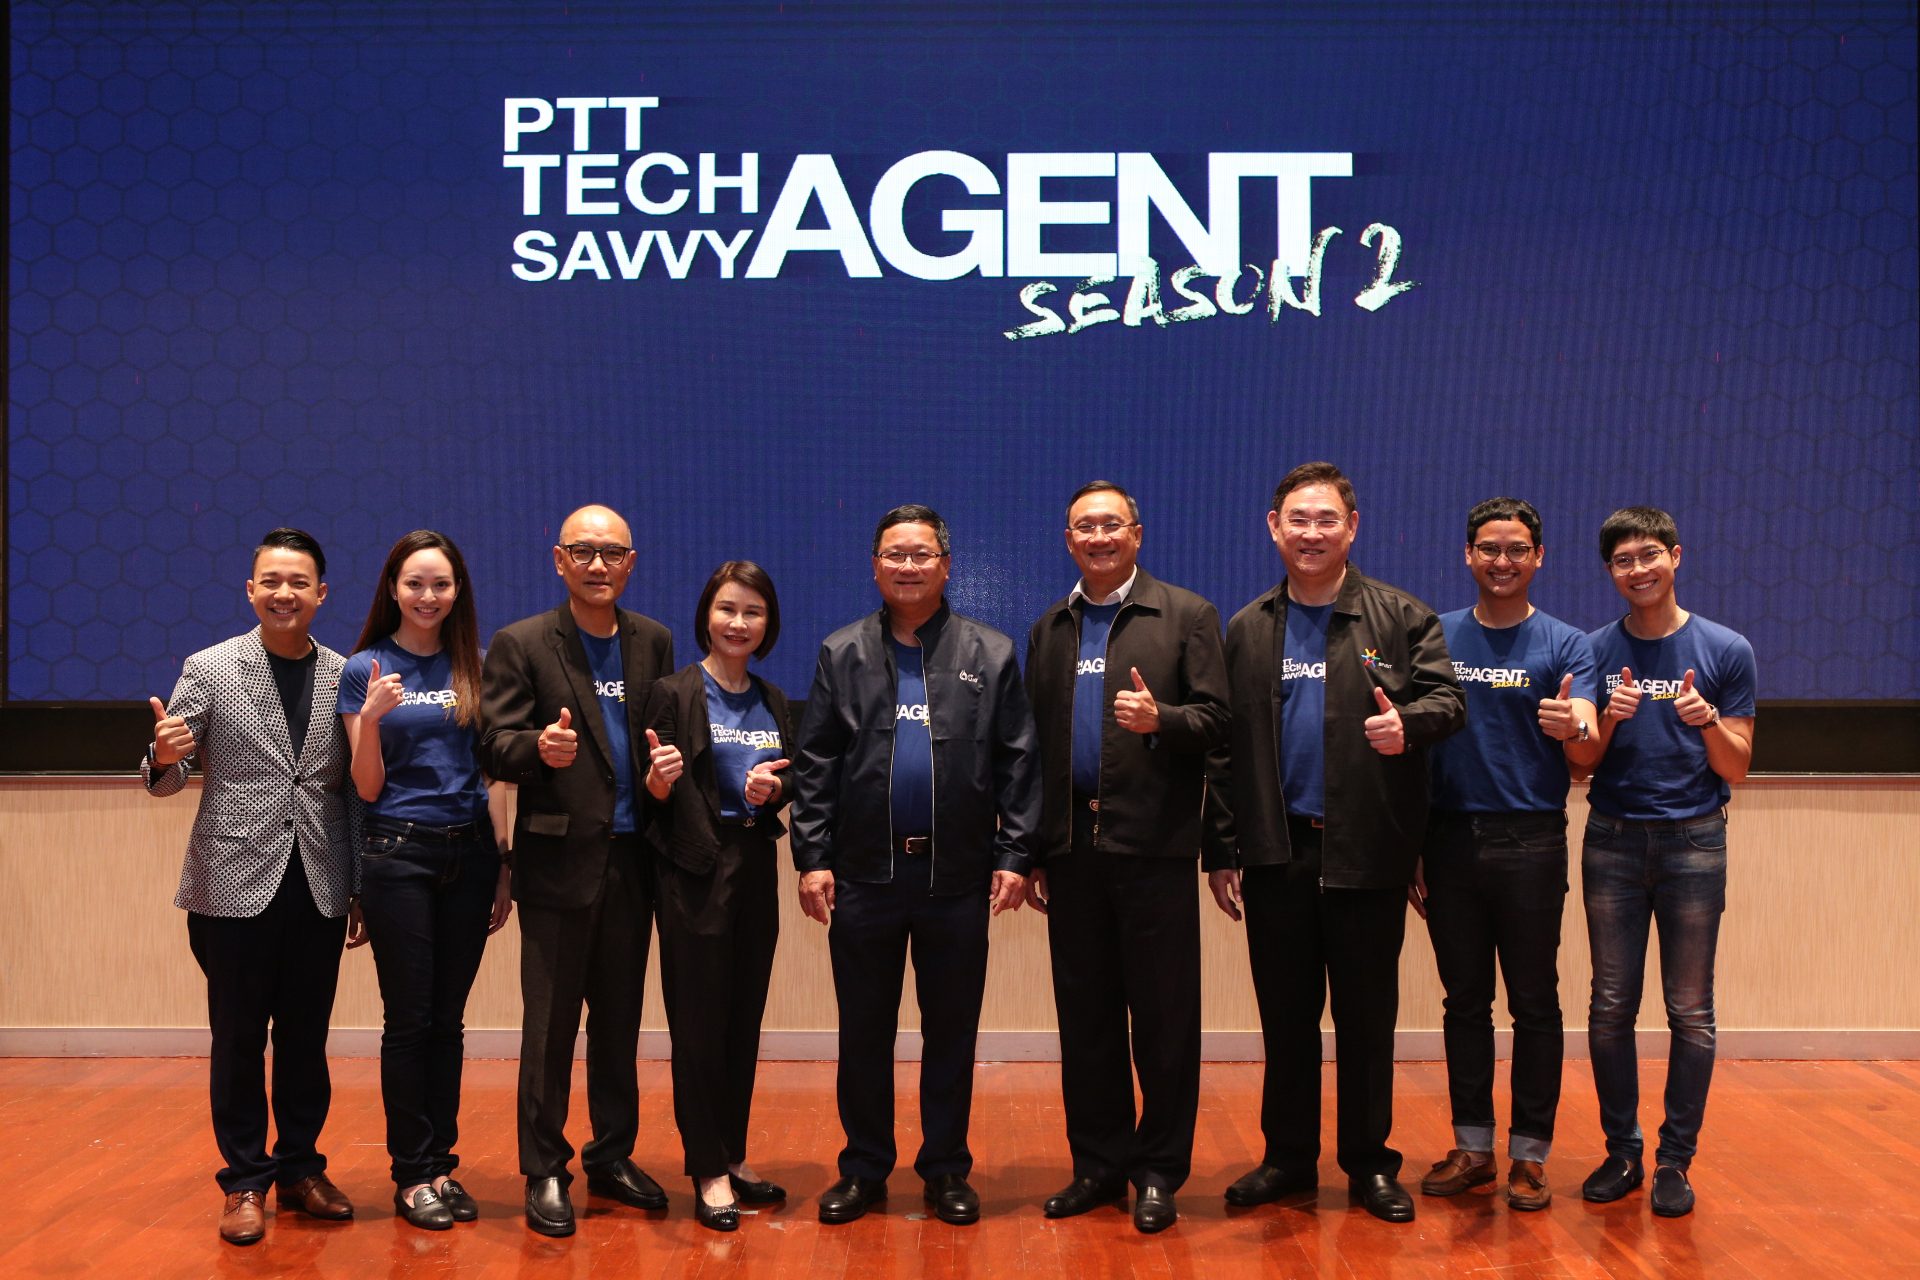 ปตท. ปั้นพนักงานต่อยอดธุรกิจใหม่ในโครงการ “PTT TECH Savvy Agent Season 2”